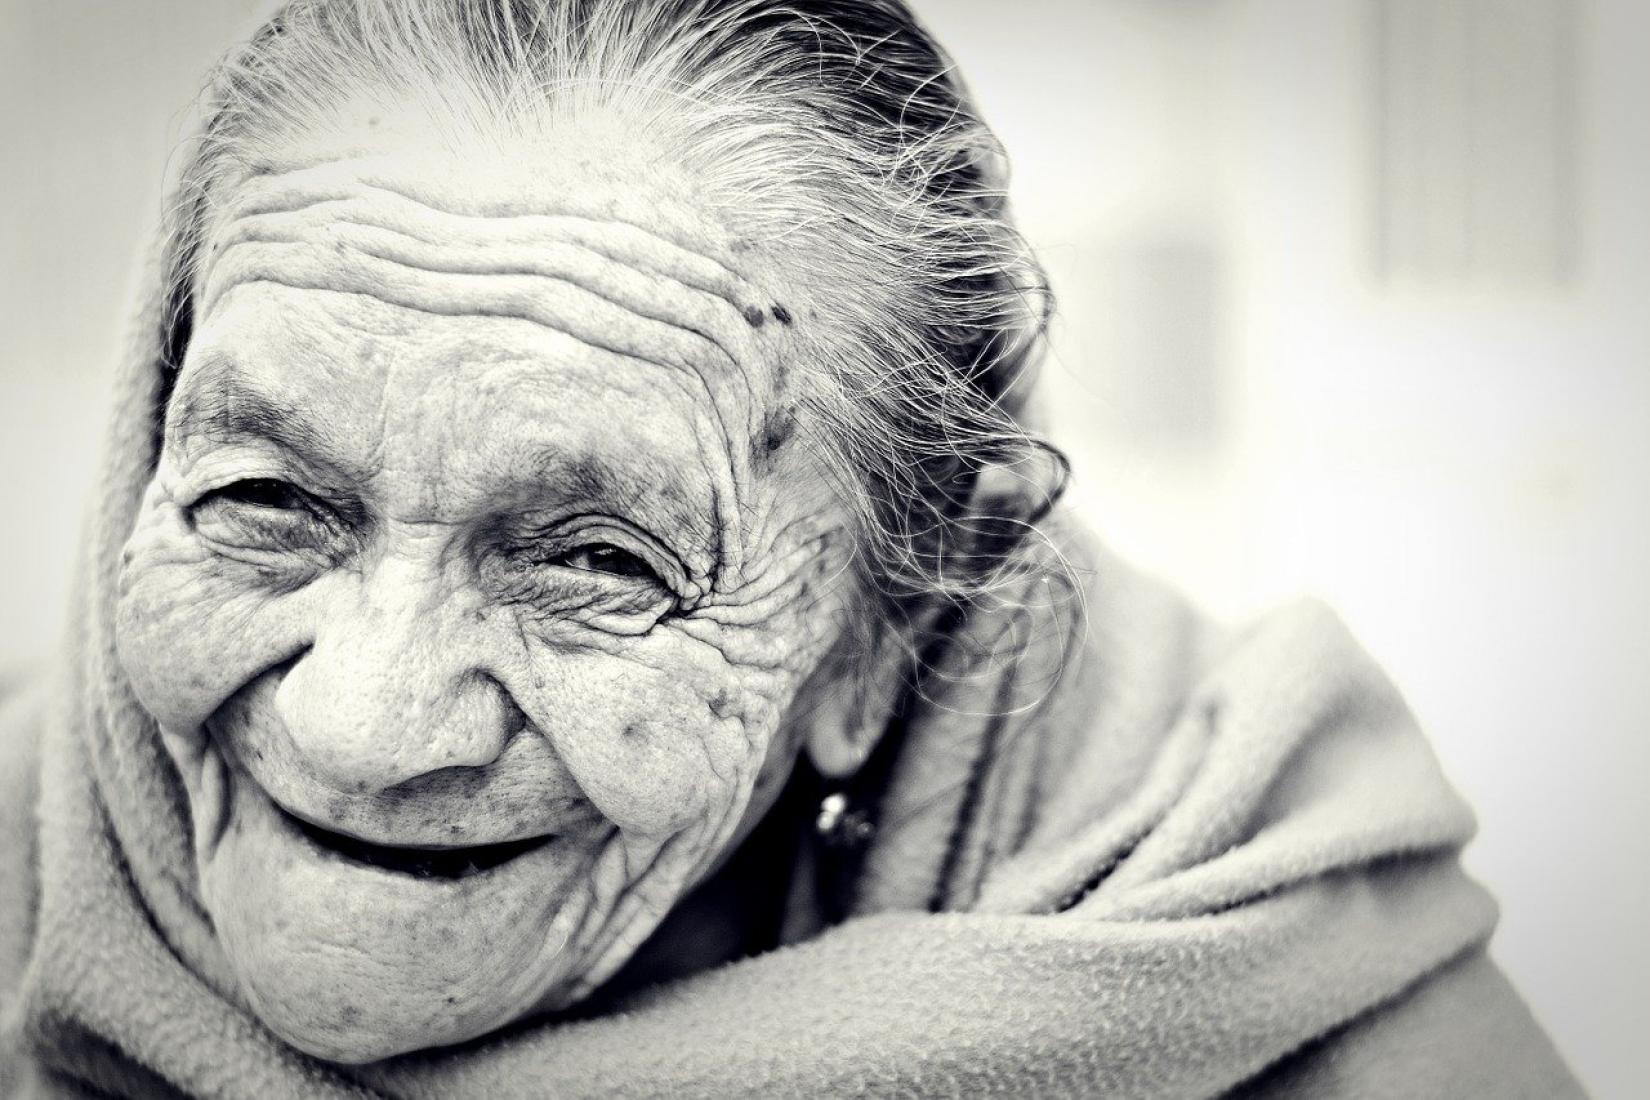 Estudo da OIT recomenda aumento da proteção social, especialmente para idosos. Foto: Pixabay (CC)